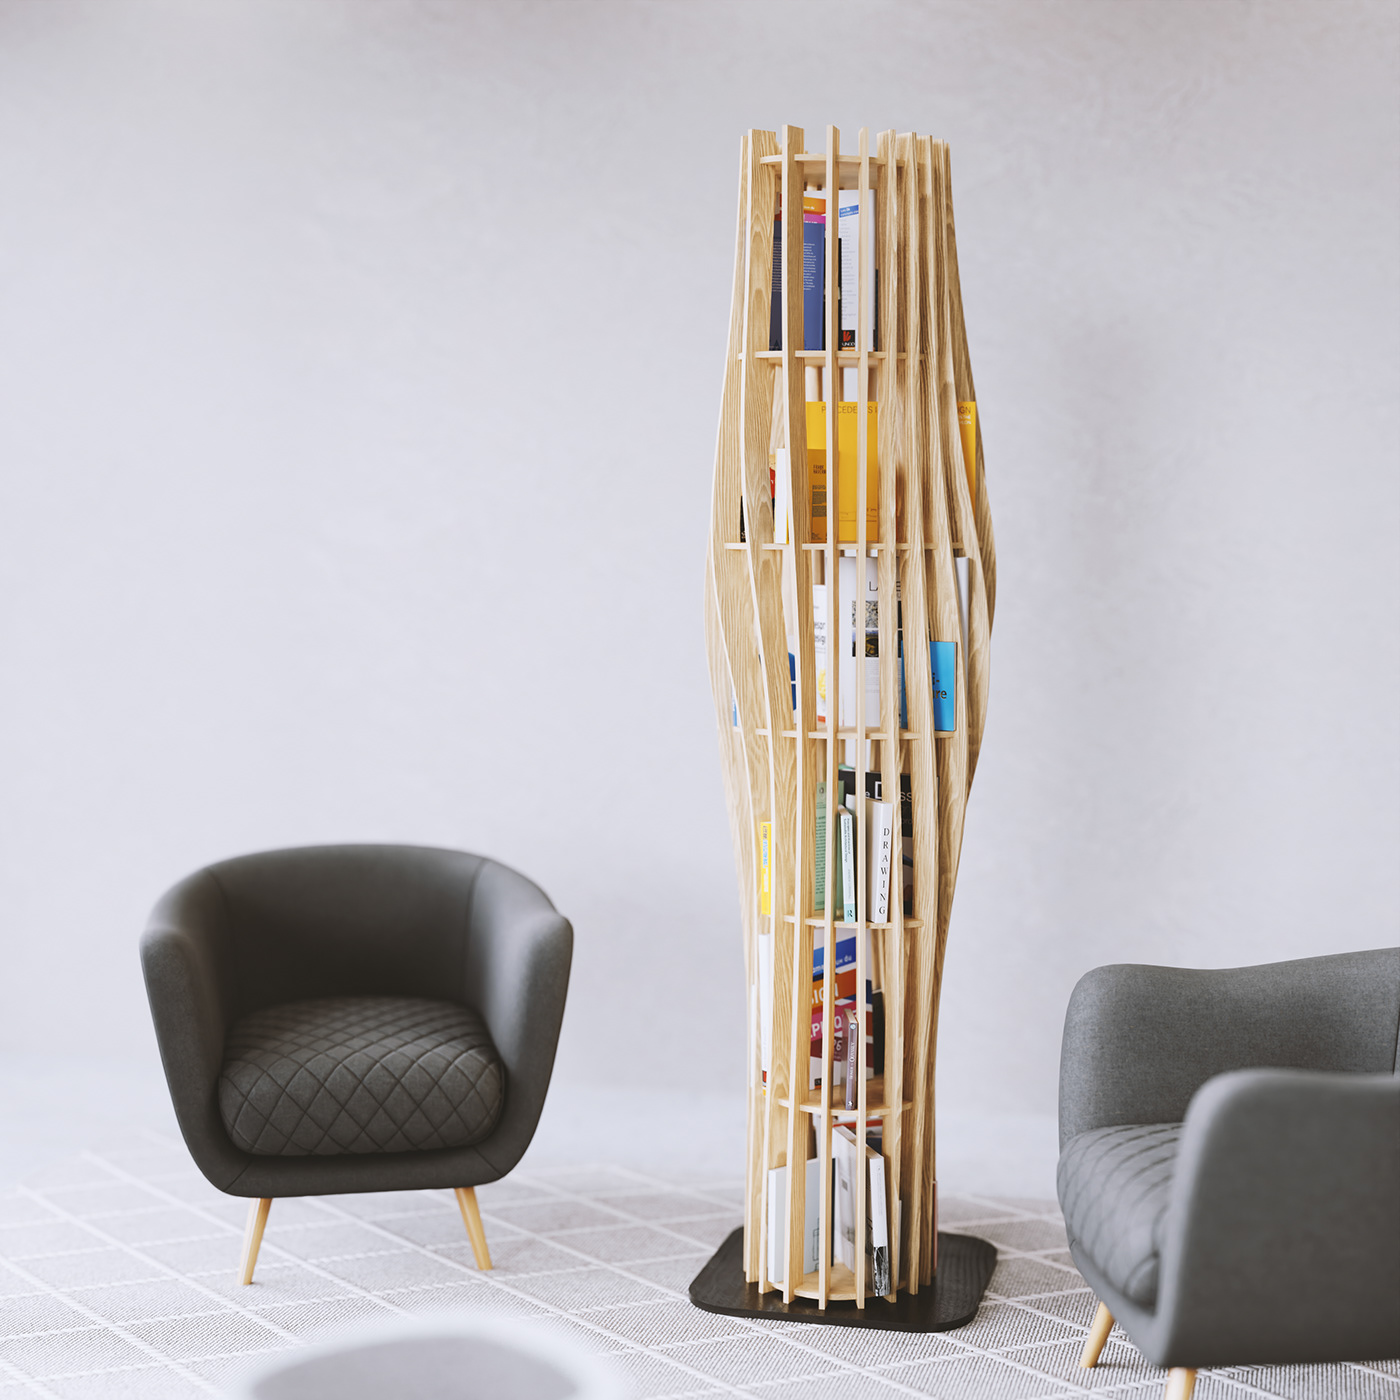 wood ash shelves bookshelves storage bois etagere parametric